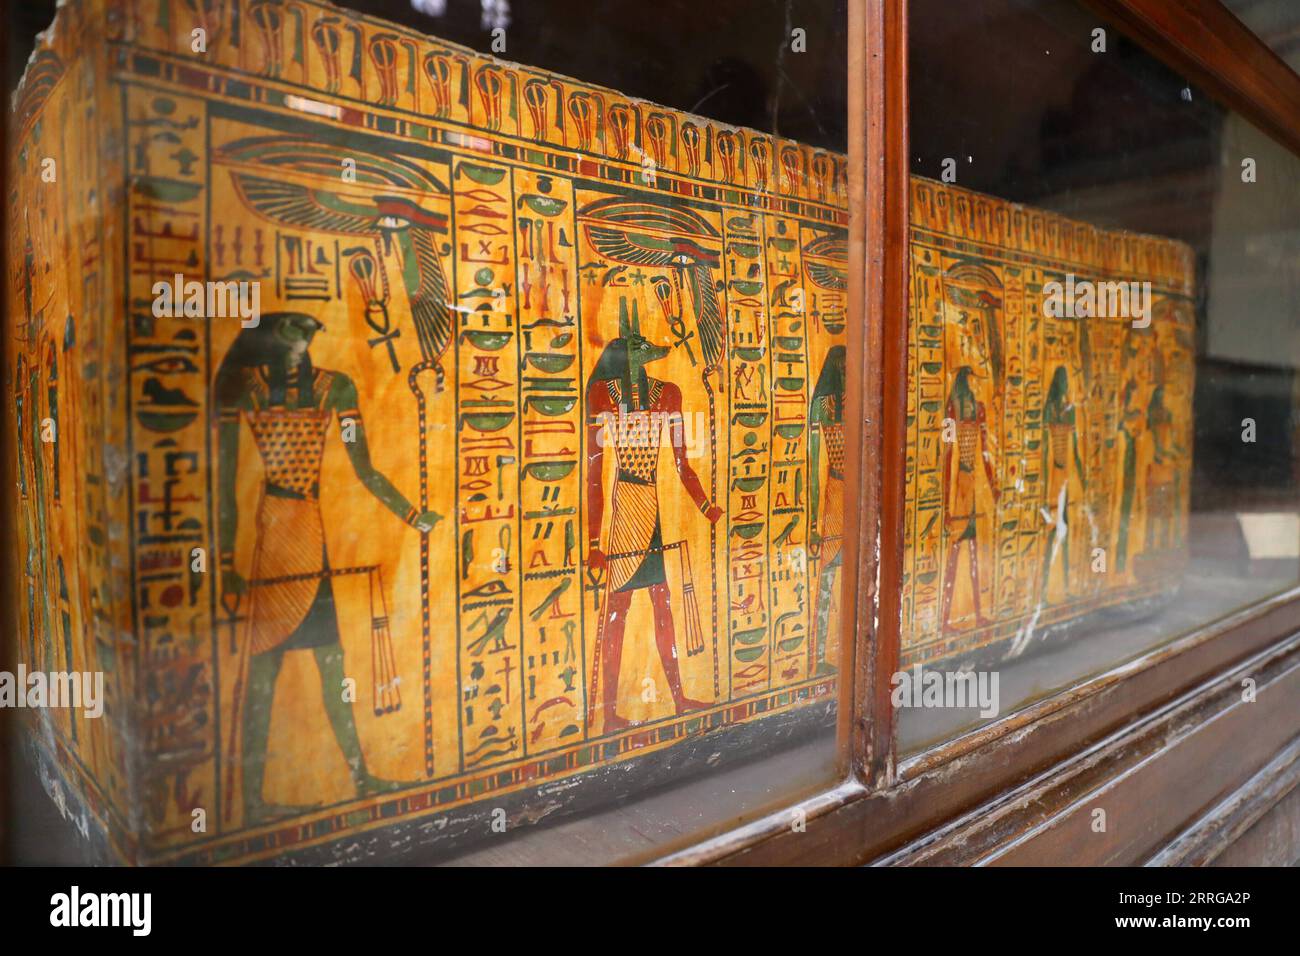 220515 -- KAIRO, 15. Mai 2022 -- Foto aufgenommen am 14. Mai 2022 zeigt einen mit Gott Anubis gemalten Mumie-Sarg im Ägyptischen Museum in Kairo, Ägypten. Als Begräbnisgottheit wird Anubis mit Mumifizierung, Begräbnisritualen und dem Friedhof im alten ägyptischen Mythos in Verbindung gebracht, der normalerweise als schwarzer Hund oder ein Mann mit Hundekopf dargestellt wird. Es ist in einer großen Anzahl von pharaonischen Antiquitäten im weltbekannten Ägyptischen Museum zu finden. ÄGYPTEN-KAIRO-ÄGYPTISCHES MUSEUM-ANUBIS SuixXiankai PUBLICATIONxNOTxINxCHN Stockfoto